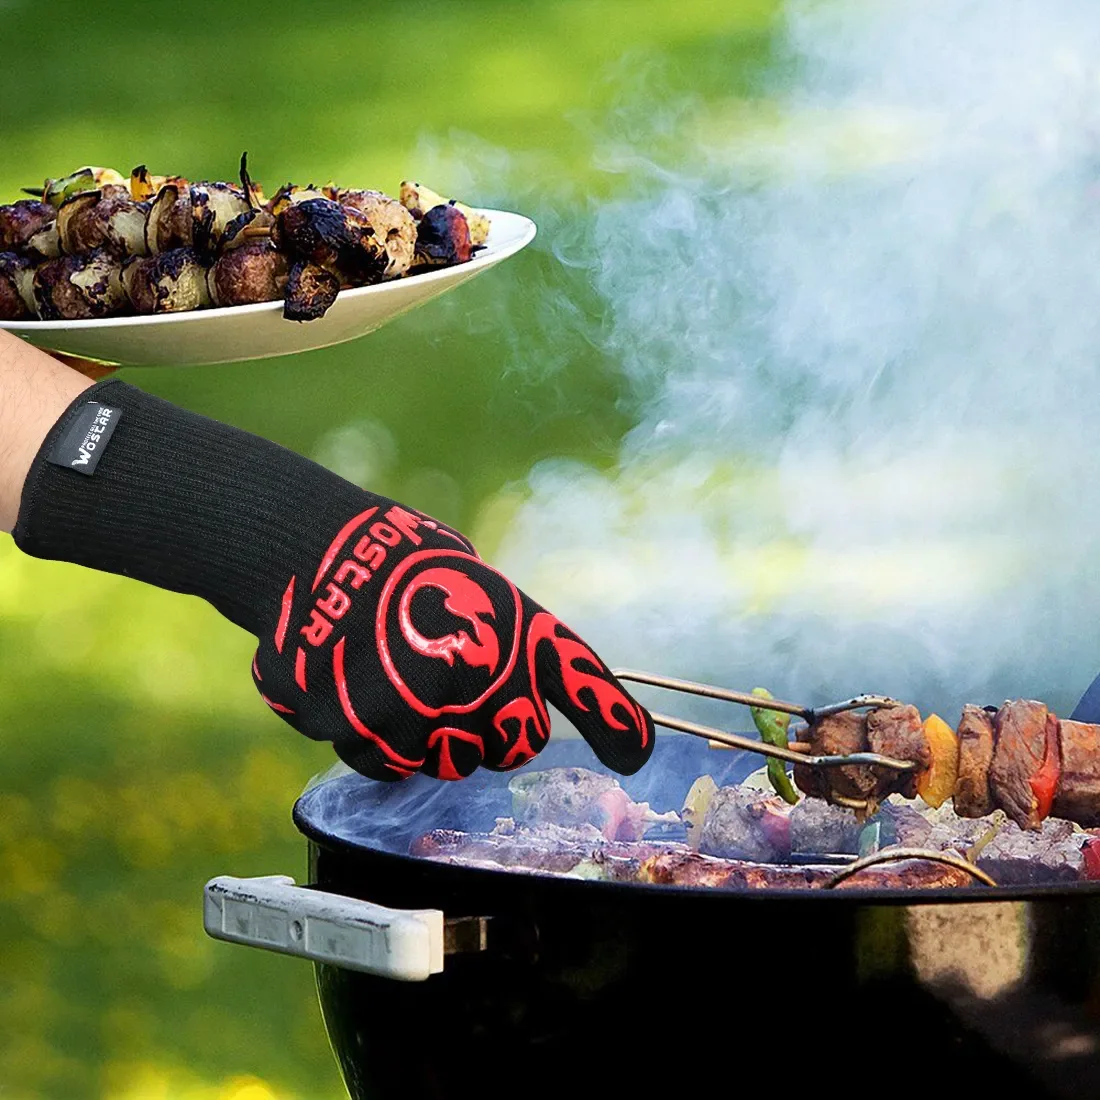 Ugns handske bbq grill grill anti värme eldsäker ugn kökhandskar värmebeständiga handskar för grill bakning ugnsmittor